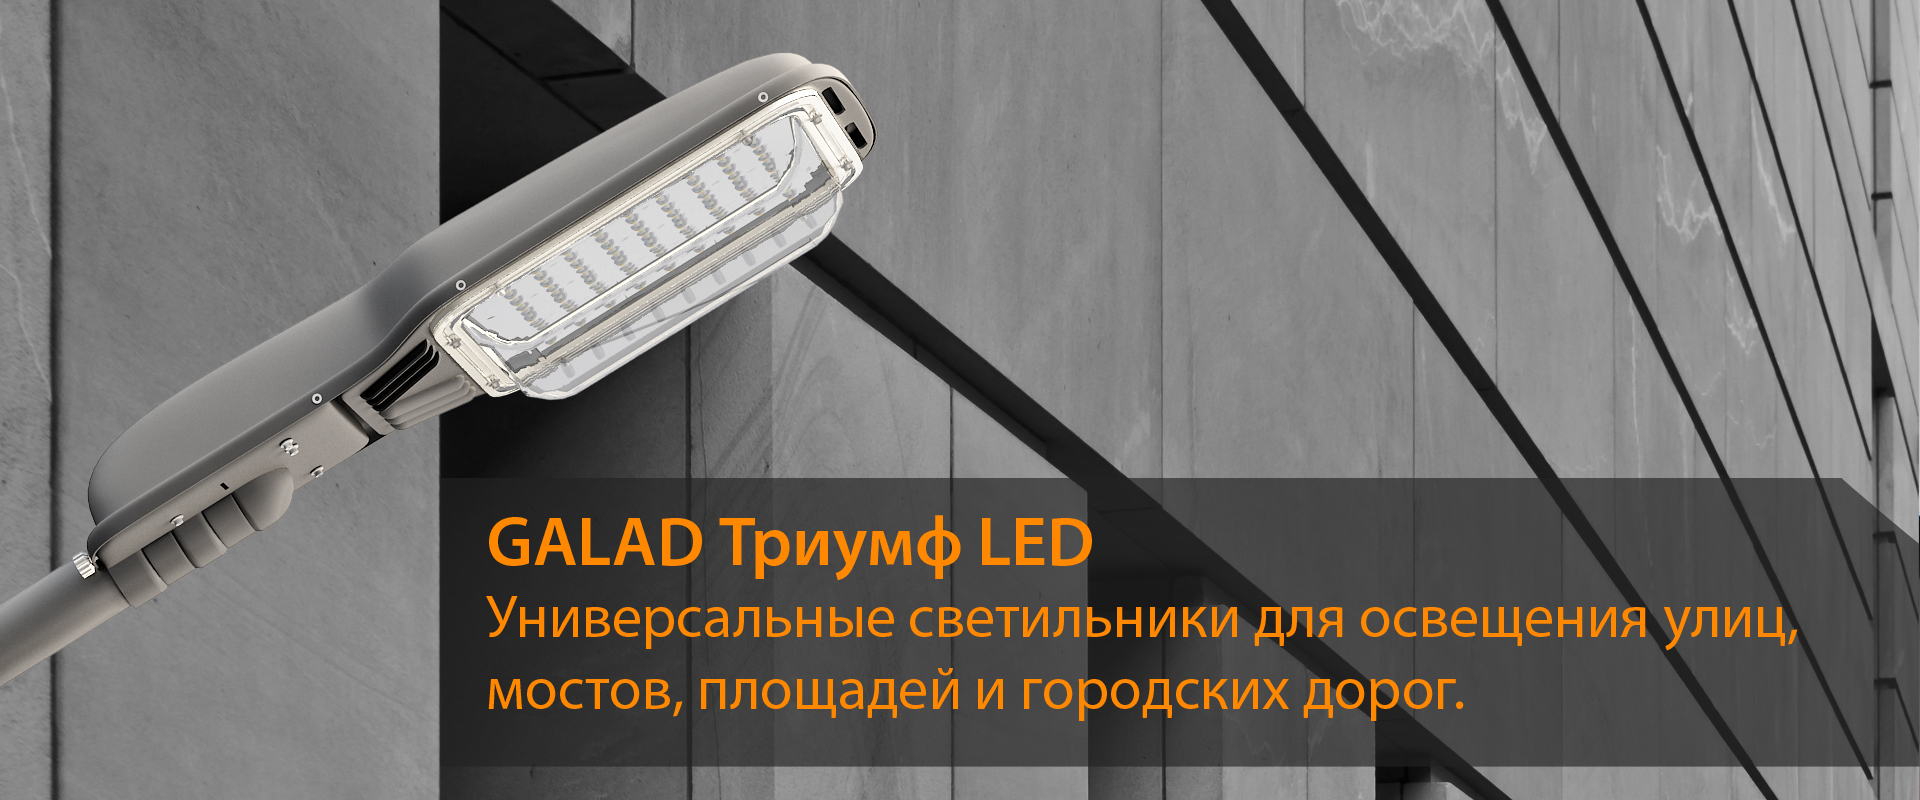 GALAD Триумф LED